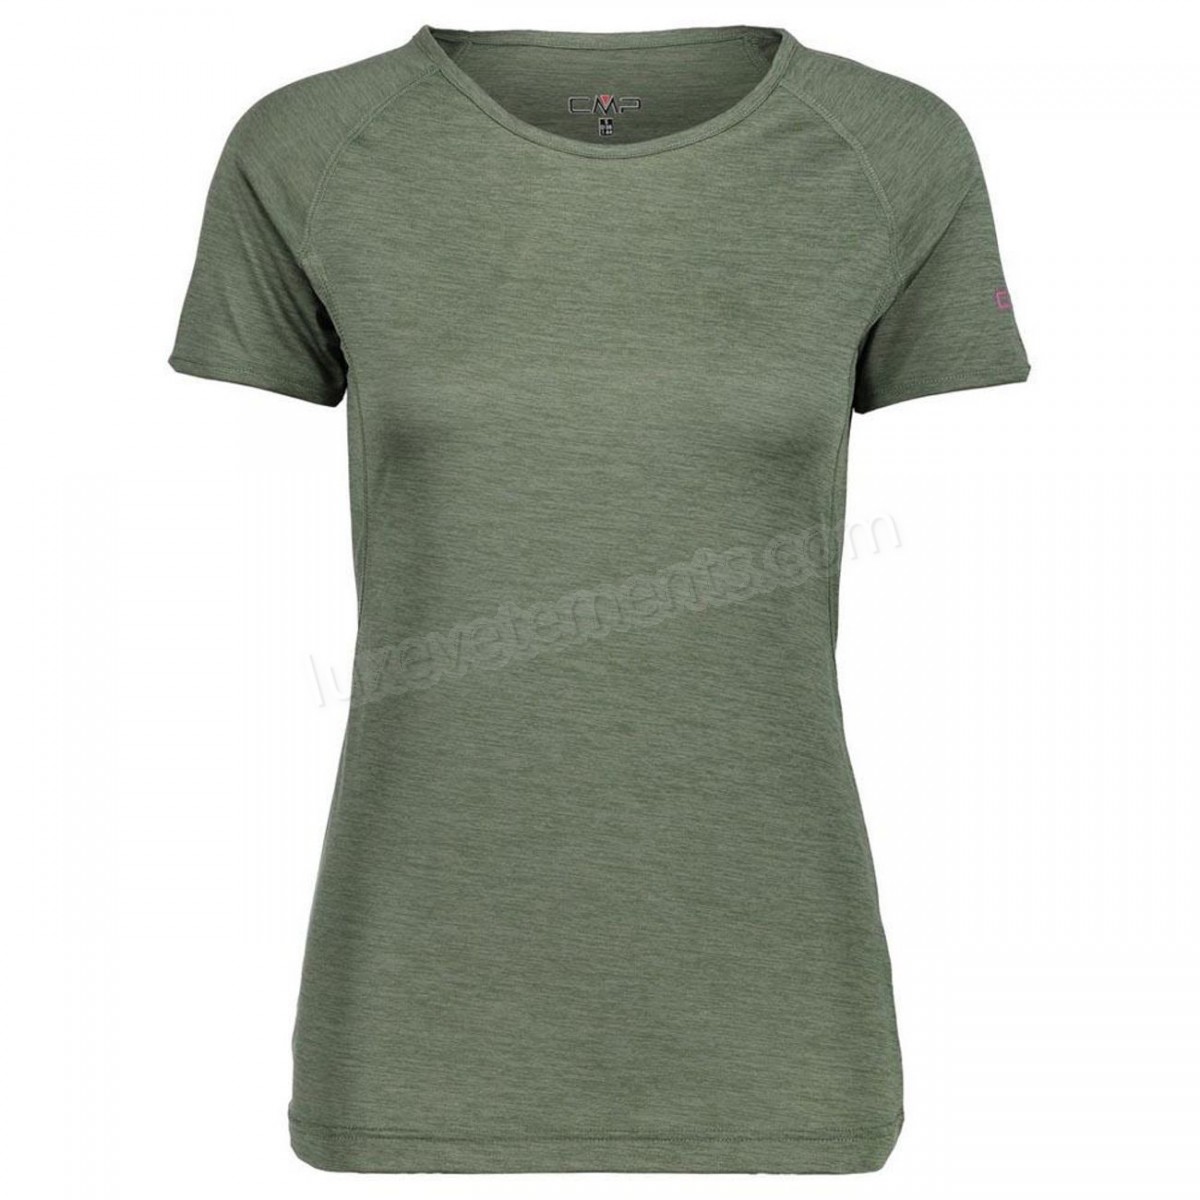 Cmp-Mode- Lifestyle femme CMP Cmp Woman T-shirt Vente en ligne - -0